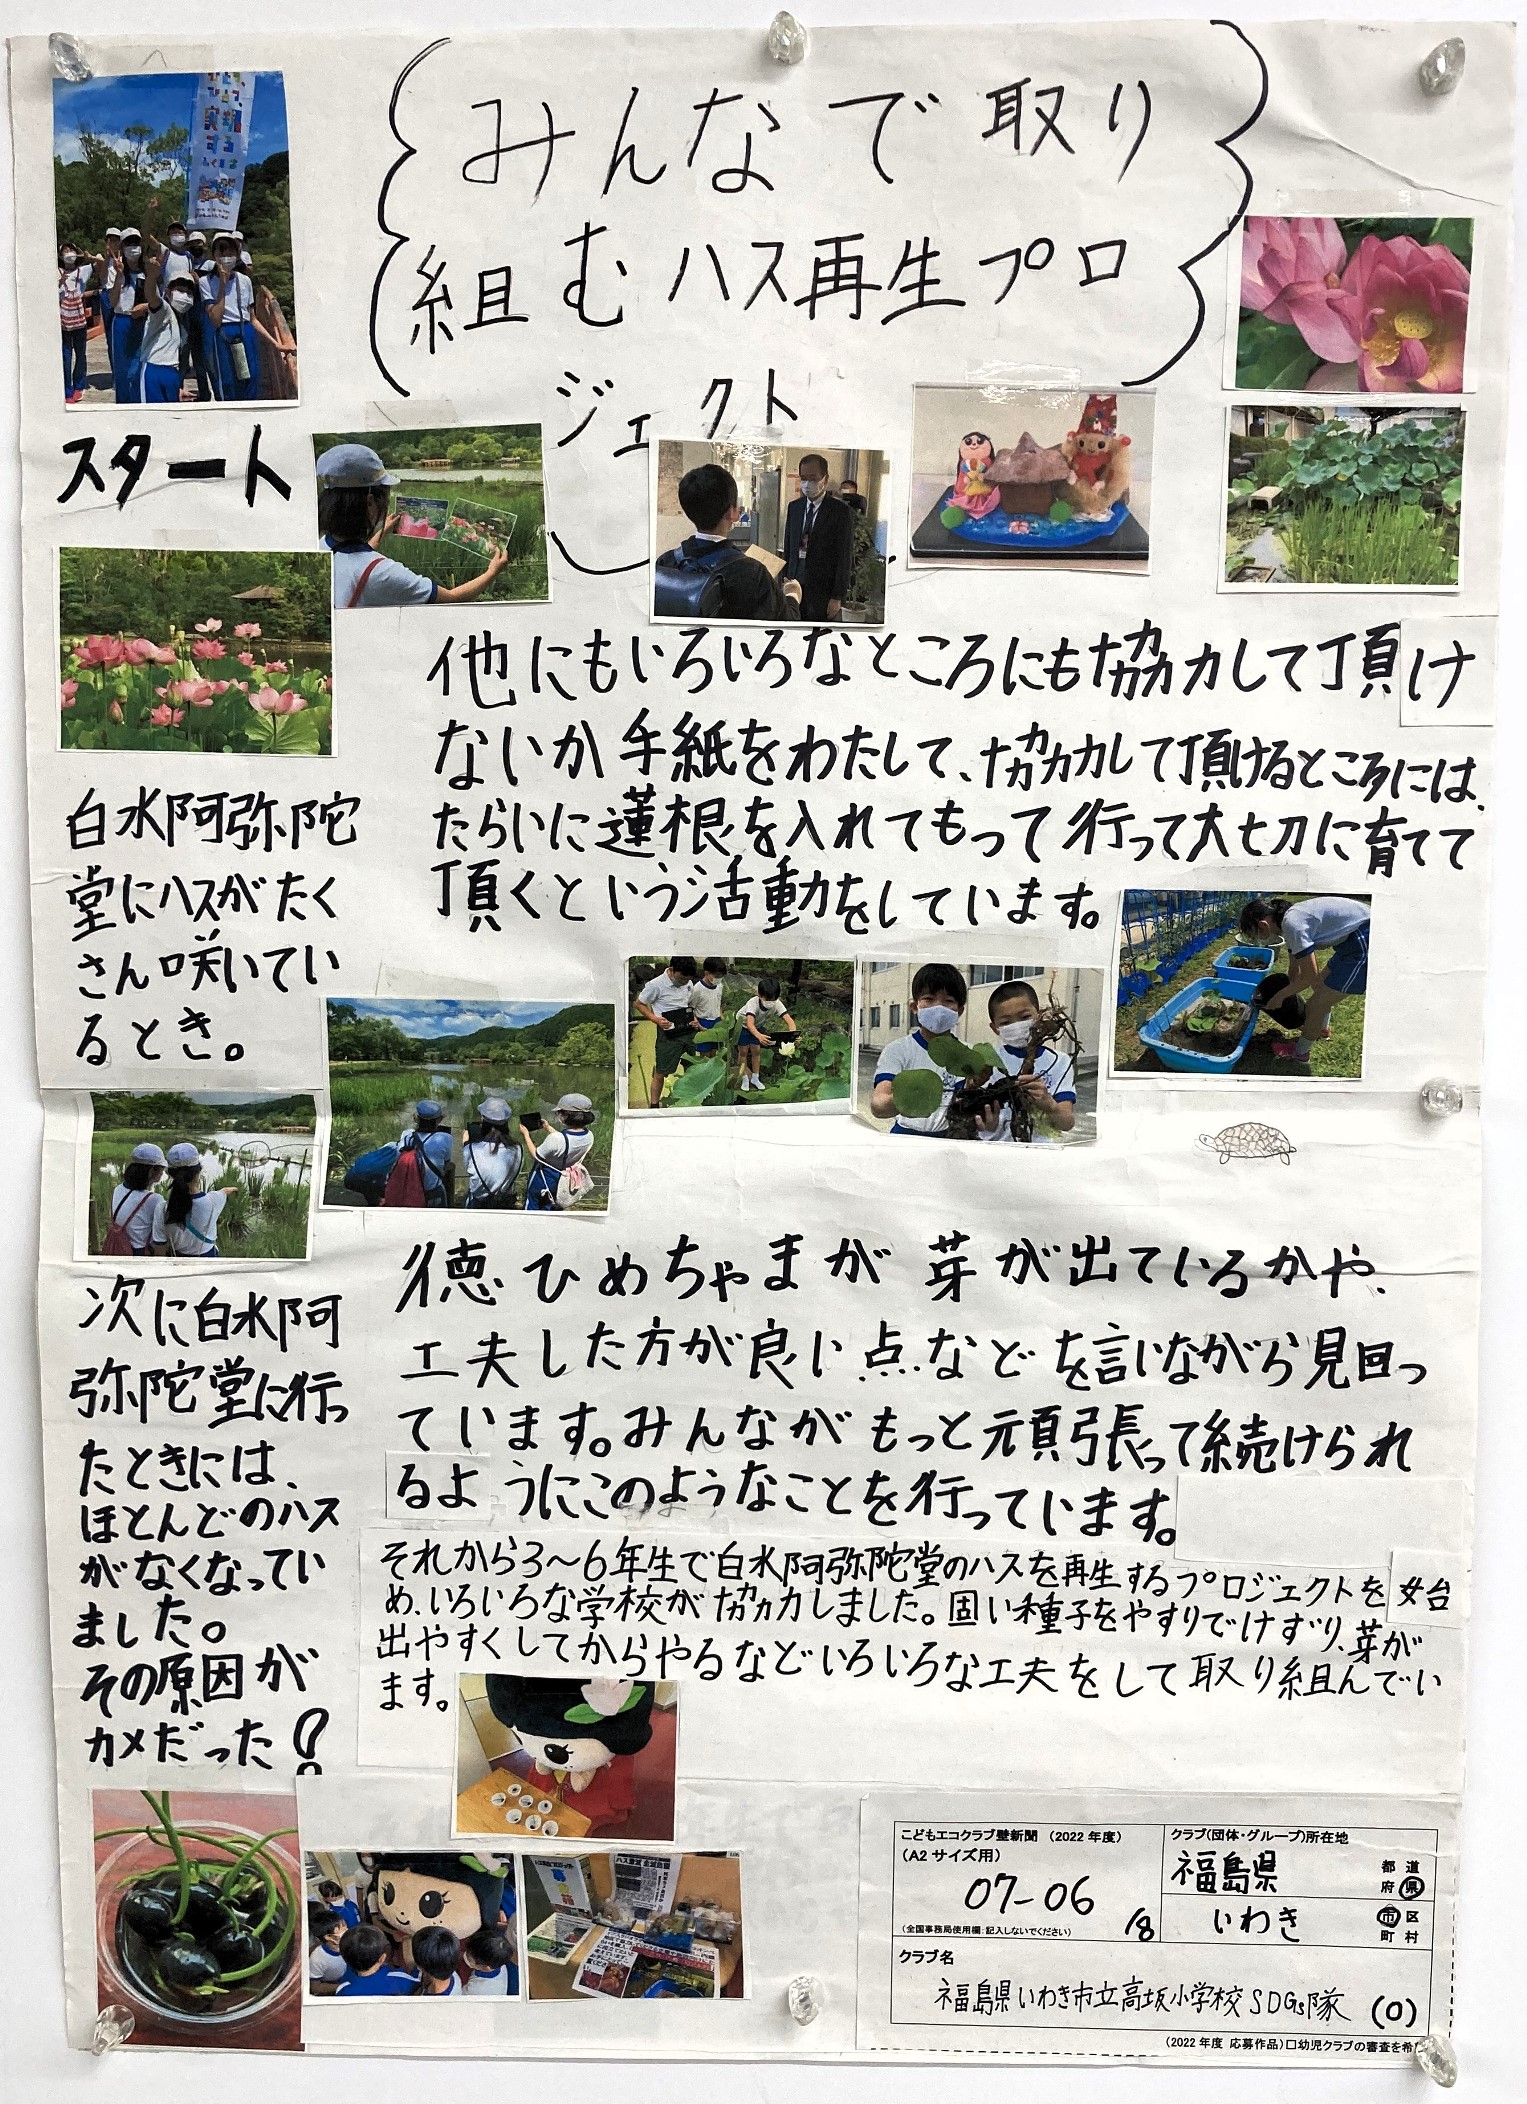 https://www.j-ecoclub.jp/topics/files/23-07-06.JPG